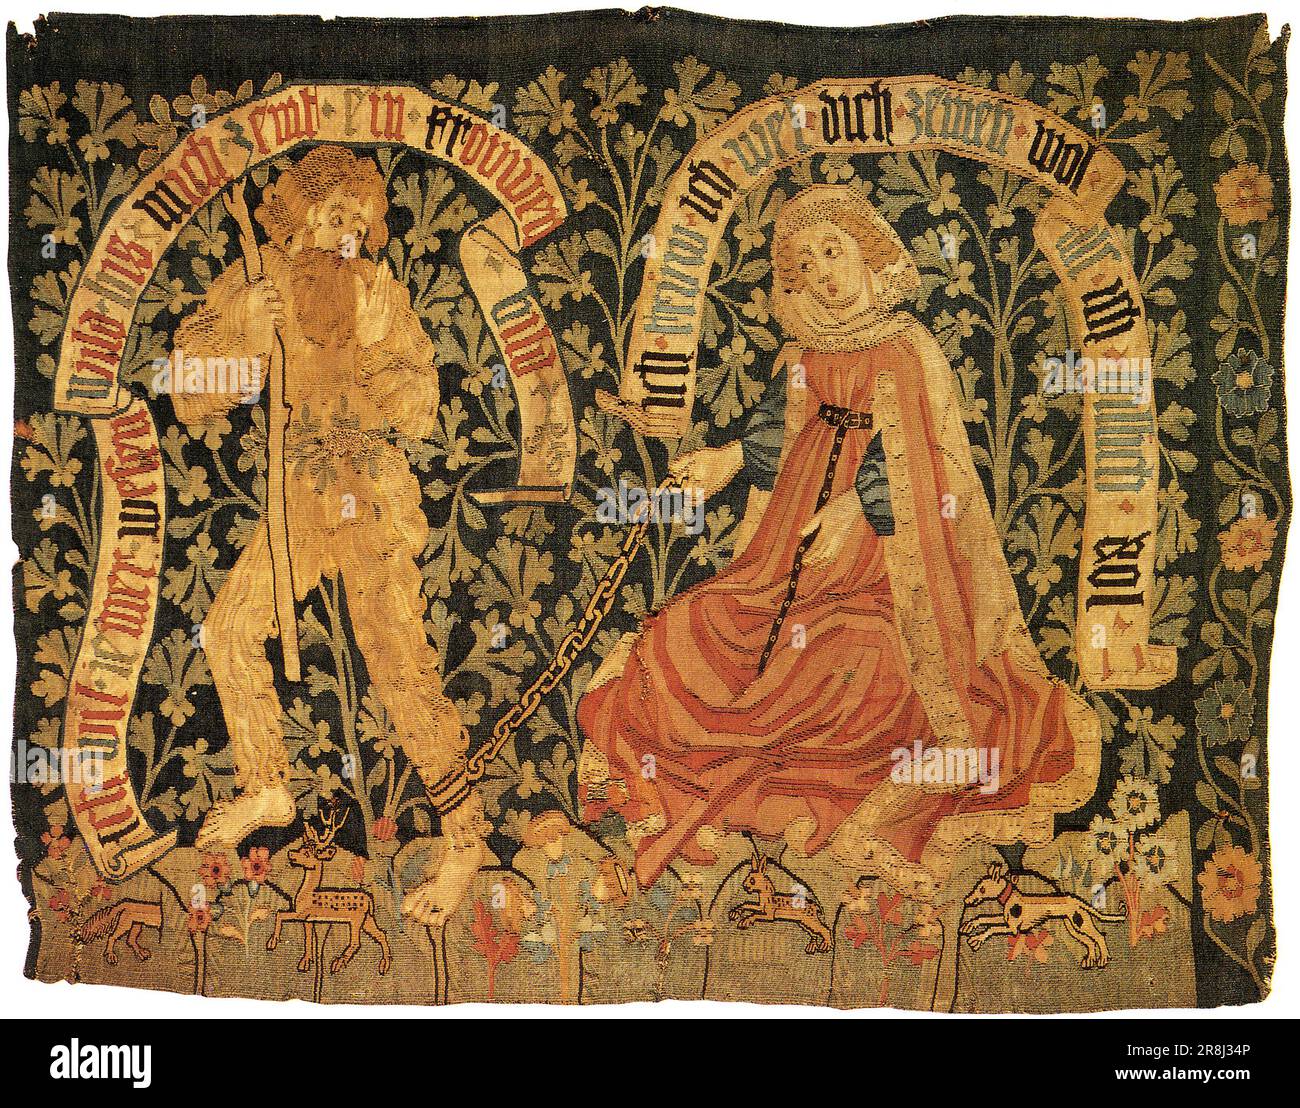 Woodwose o Wildman. Arazzo del tardo XV secolo da Basilea, che mostra un boscaiolo domato da una signora virtuosa l'uomo selvaggio, l'uomo selvaggio dei boschi, o boscaiolo o boscaiolo è una figura mitica Foto Stock